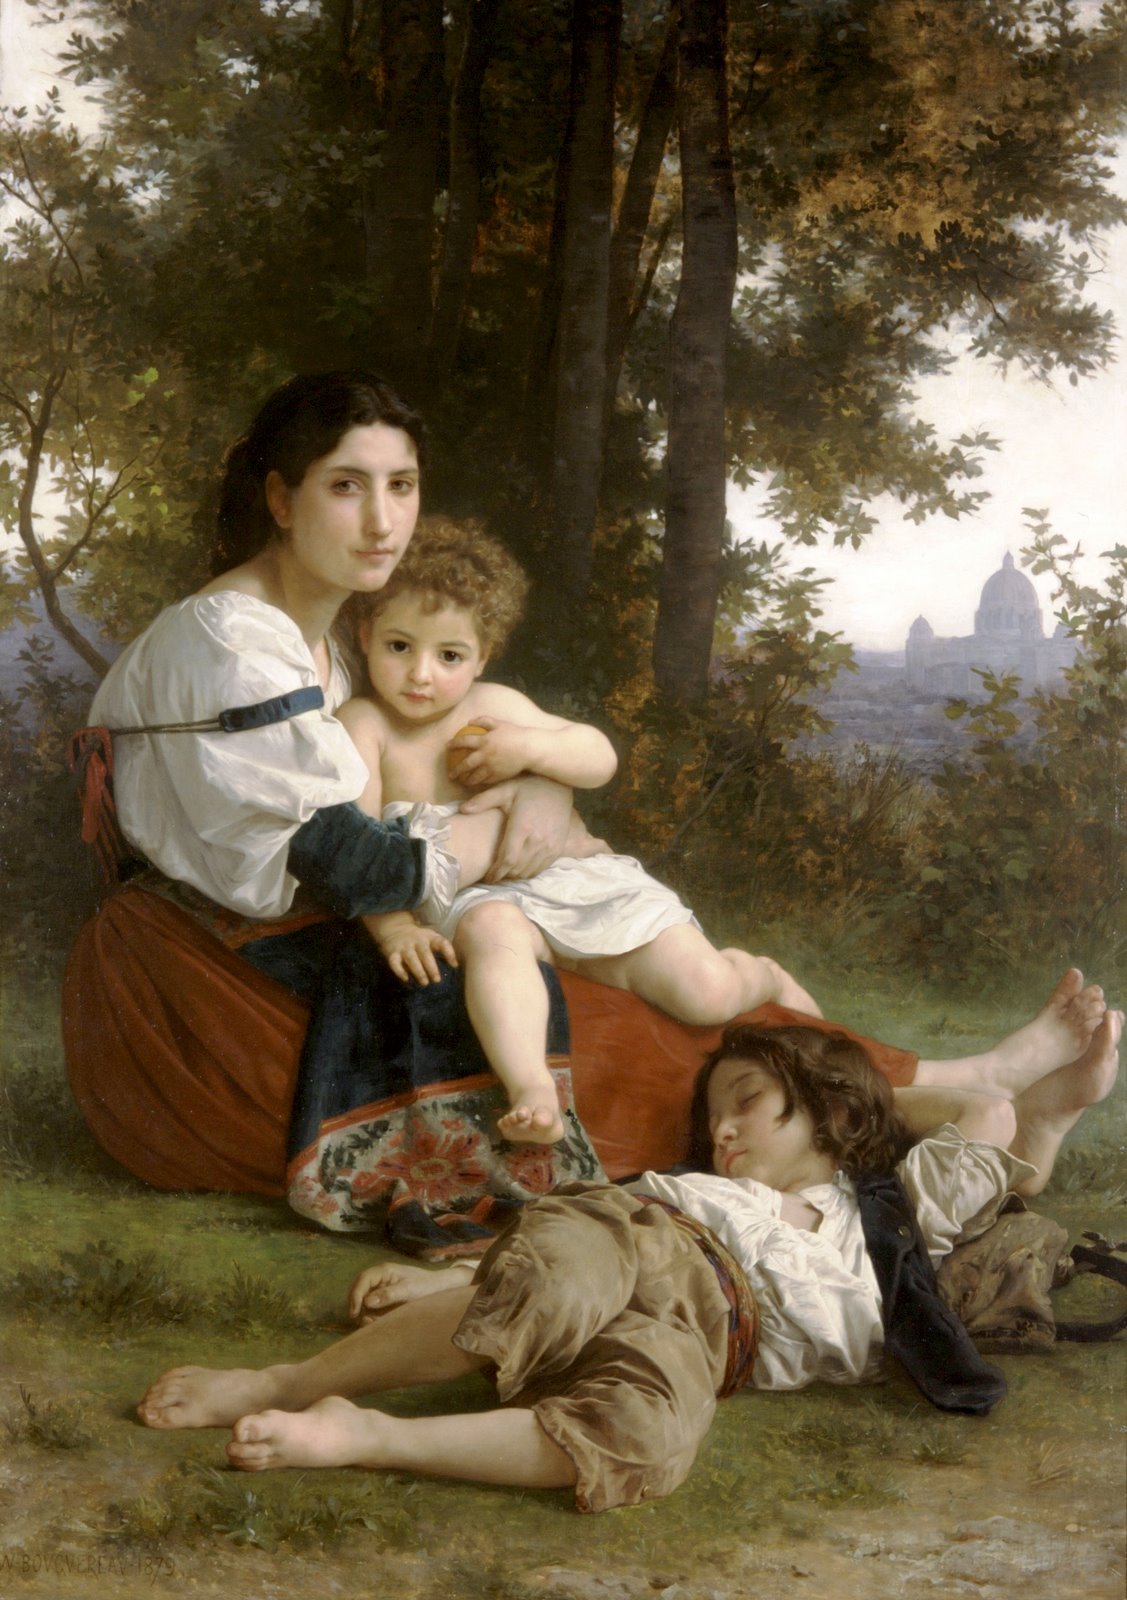 [William-Adolphe_Bouguereau_(1825-1905)_-_Rest_(1879).jpg]